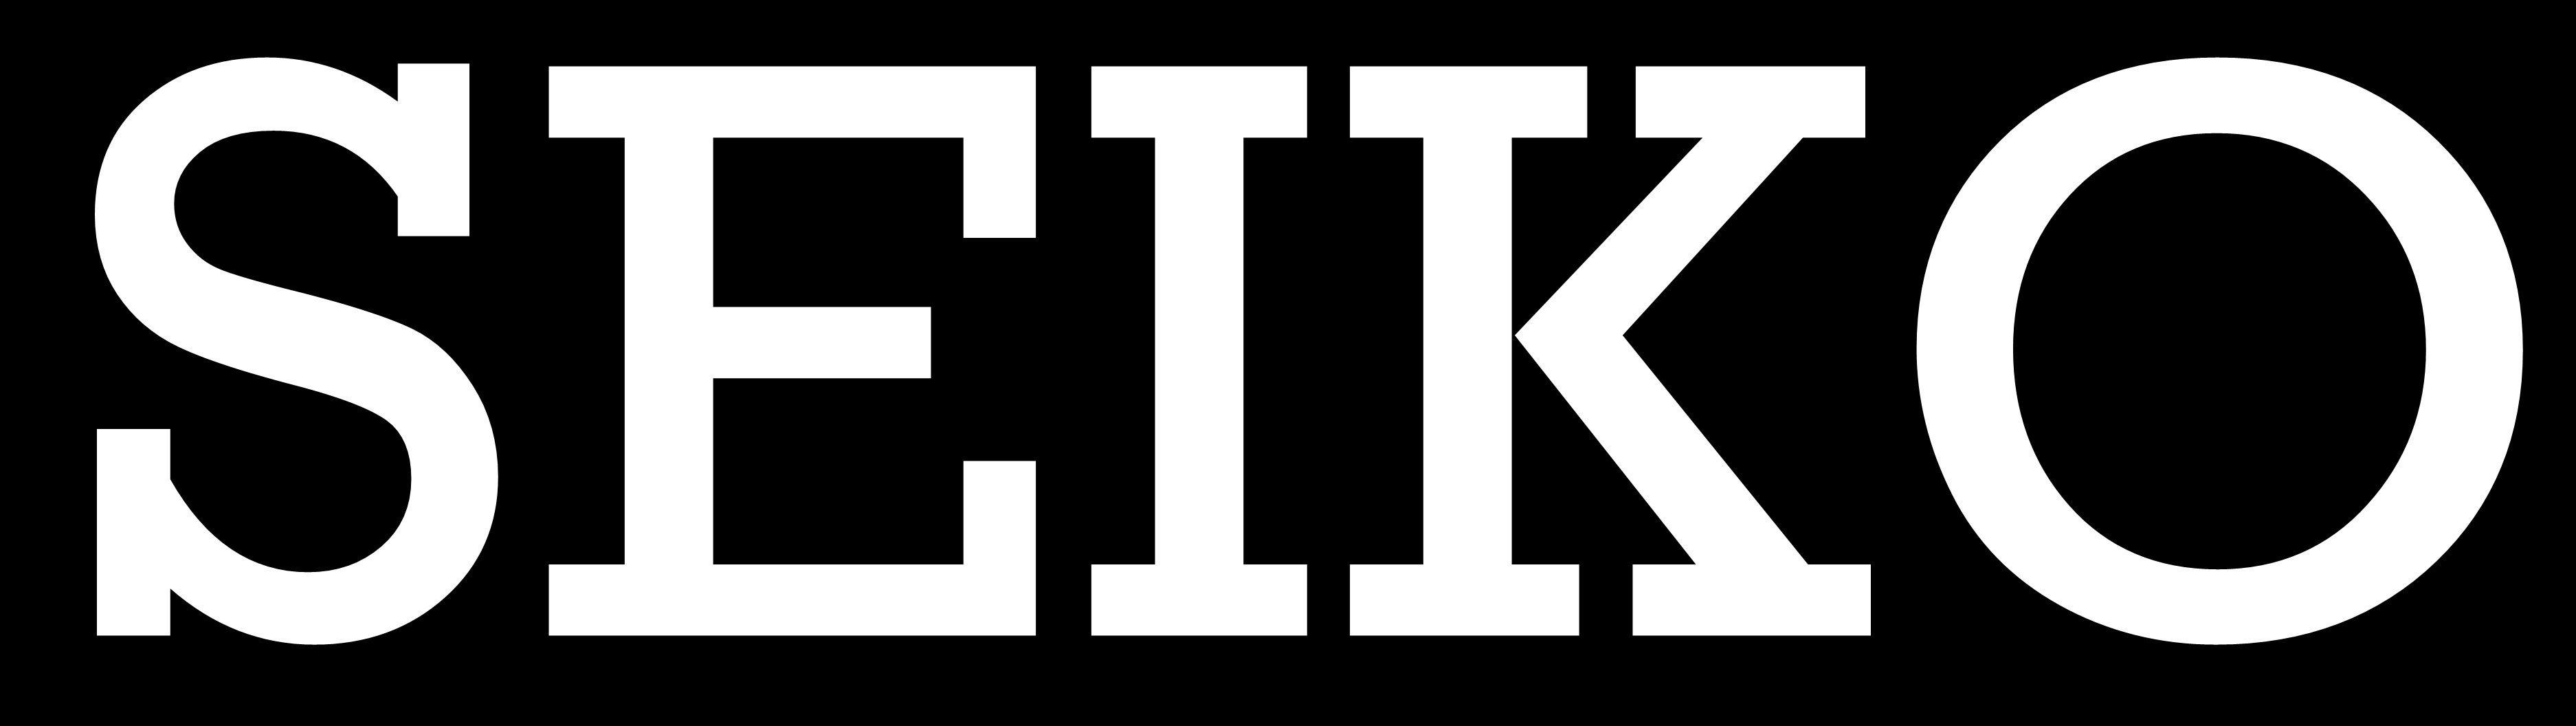 Seiko Logo - Seiko Logos